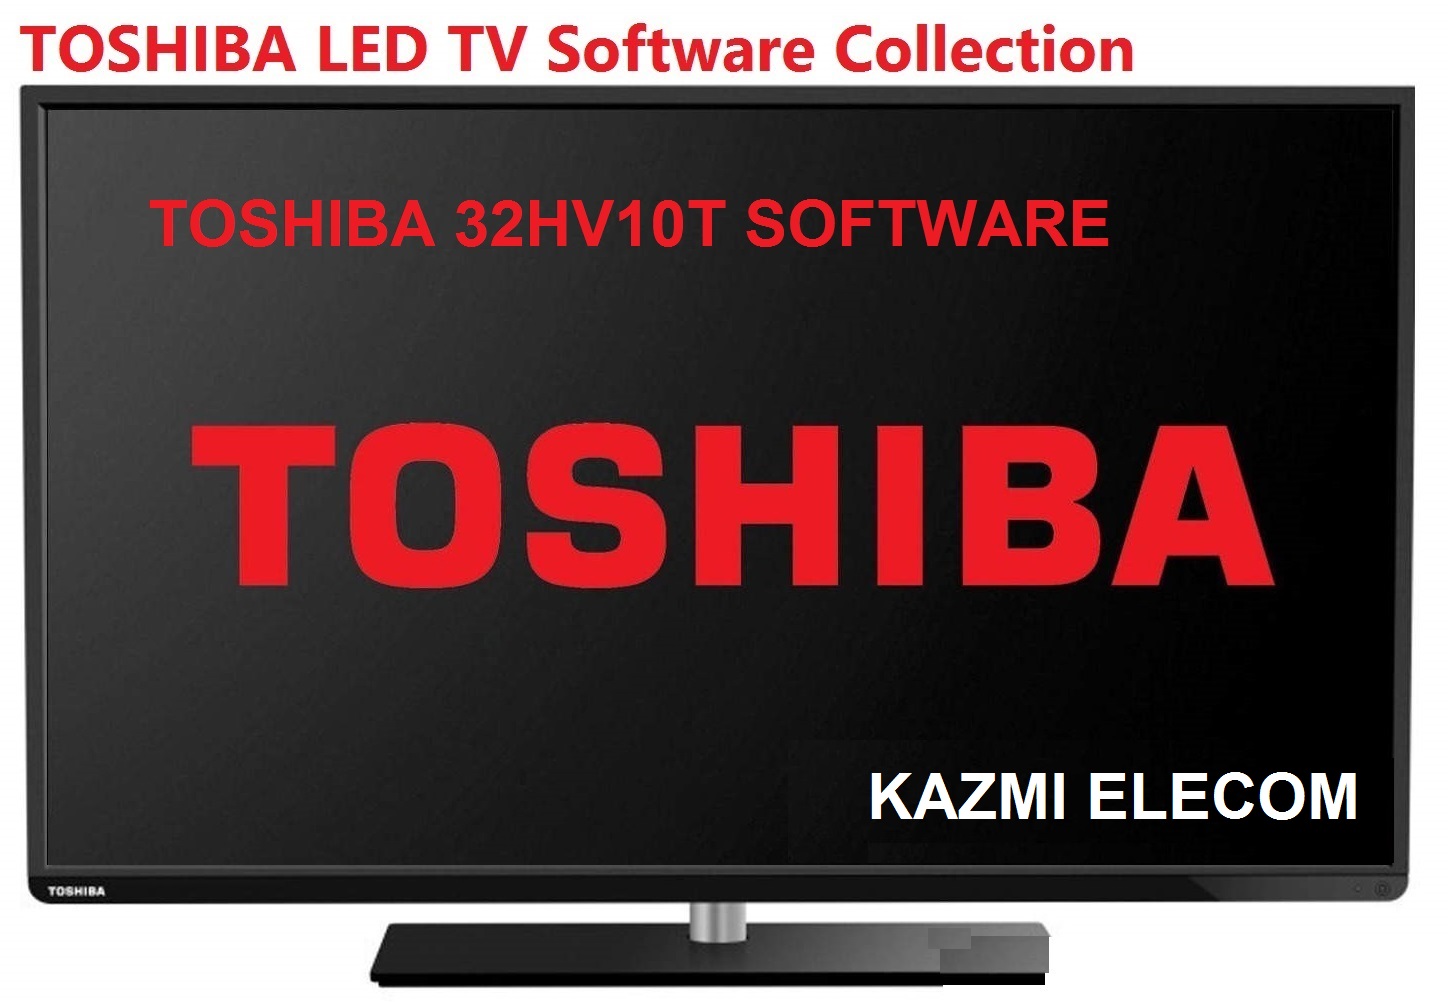 Toshiba 32Hv10T